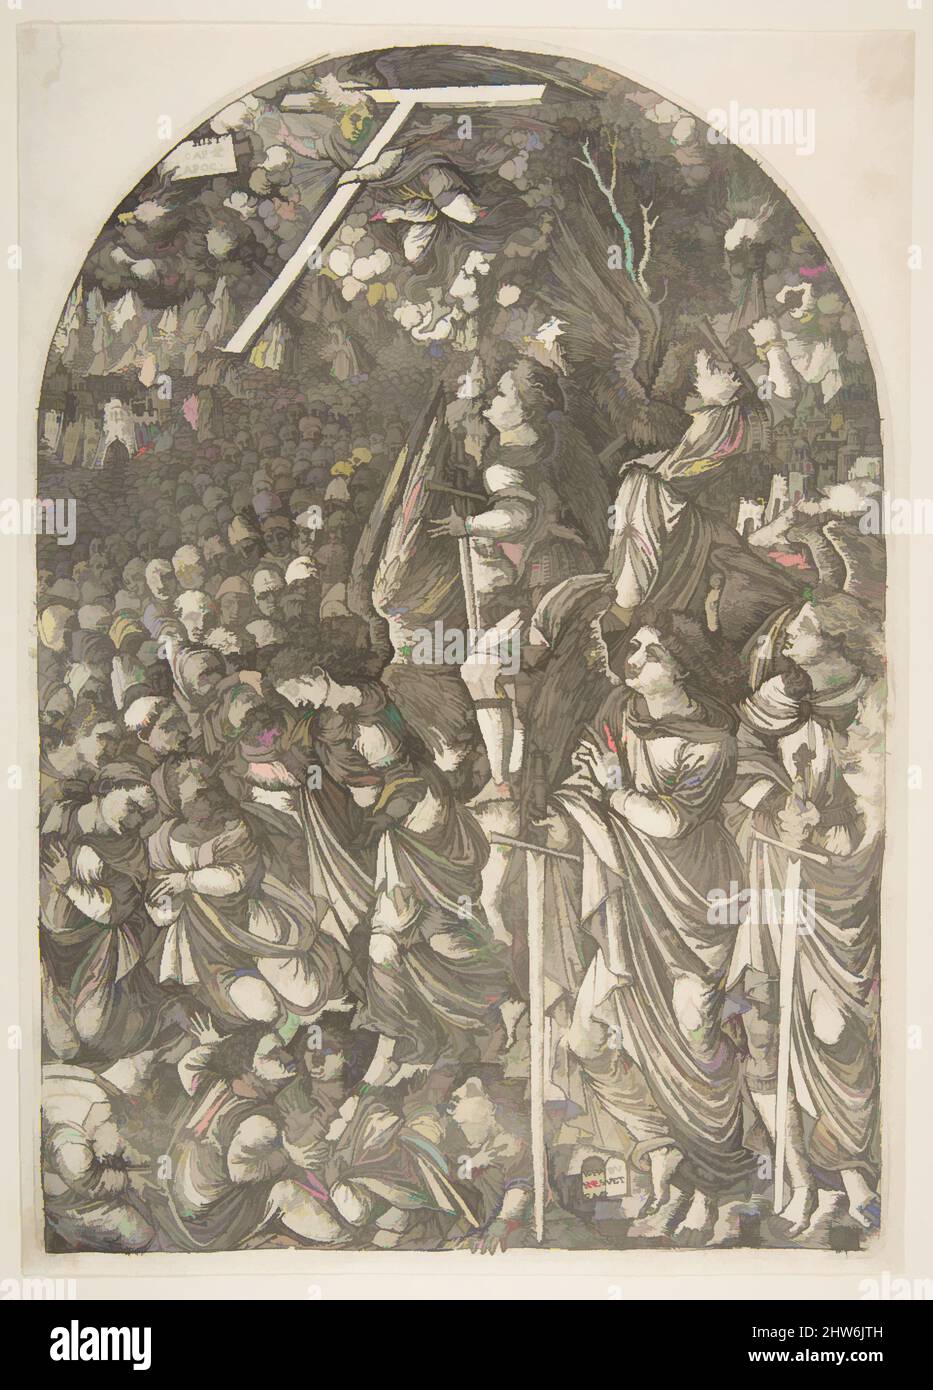 Arte ispirata a quattro Angeli che trattengono i Venti, dall'Apocalisse, n.d., incisione, piatto: 11 15/16 x 8 7/16 pollici. (30,3 x 21,5 cm), stampe, piumino Jean (francese, ca. 1485–dopo il 1561, opere classiche modernizzate da Artotop con un tuffo di modernità. Forme, colore e valore, impatto visivo accattivante sulle emozioni artistiche attraverso la libertà delle opere d'arte in modo contemporaneo. Un messaggio senza tempo che persegue una nuova direzione selvaggiamente creativa. Artisti che si rivolgono al supporto digitale e creano l'NFT Artotop Foto Stock